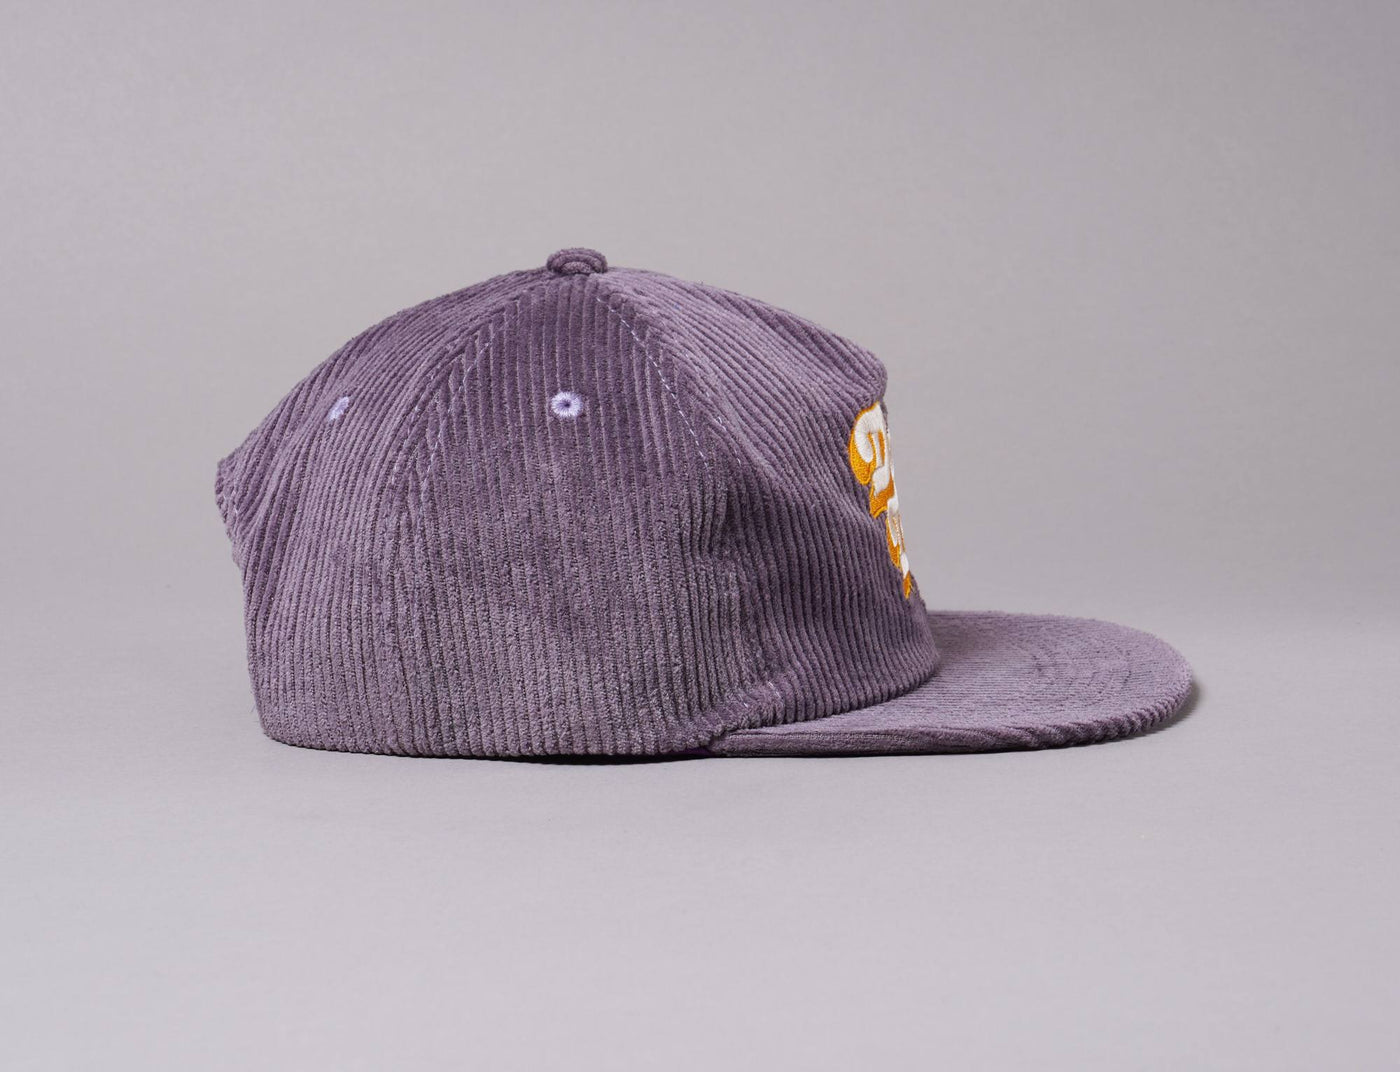 Cap Snapback LA Don't Trip Fat Corduroy Snapback Cap Purple Free & Easy Bucket Hat / Purple / One Size